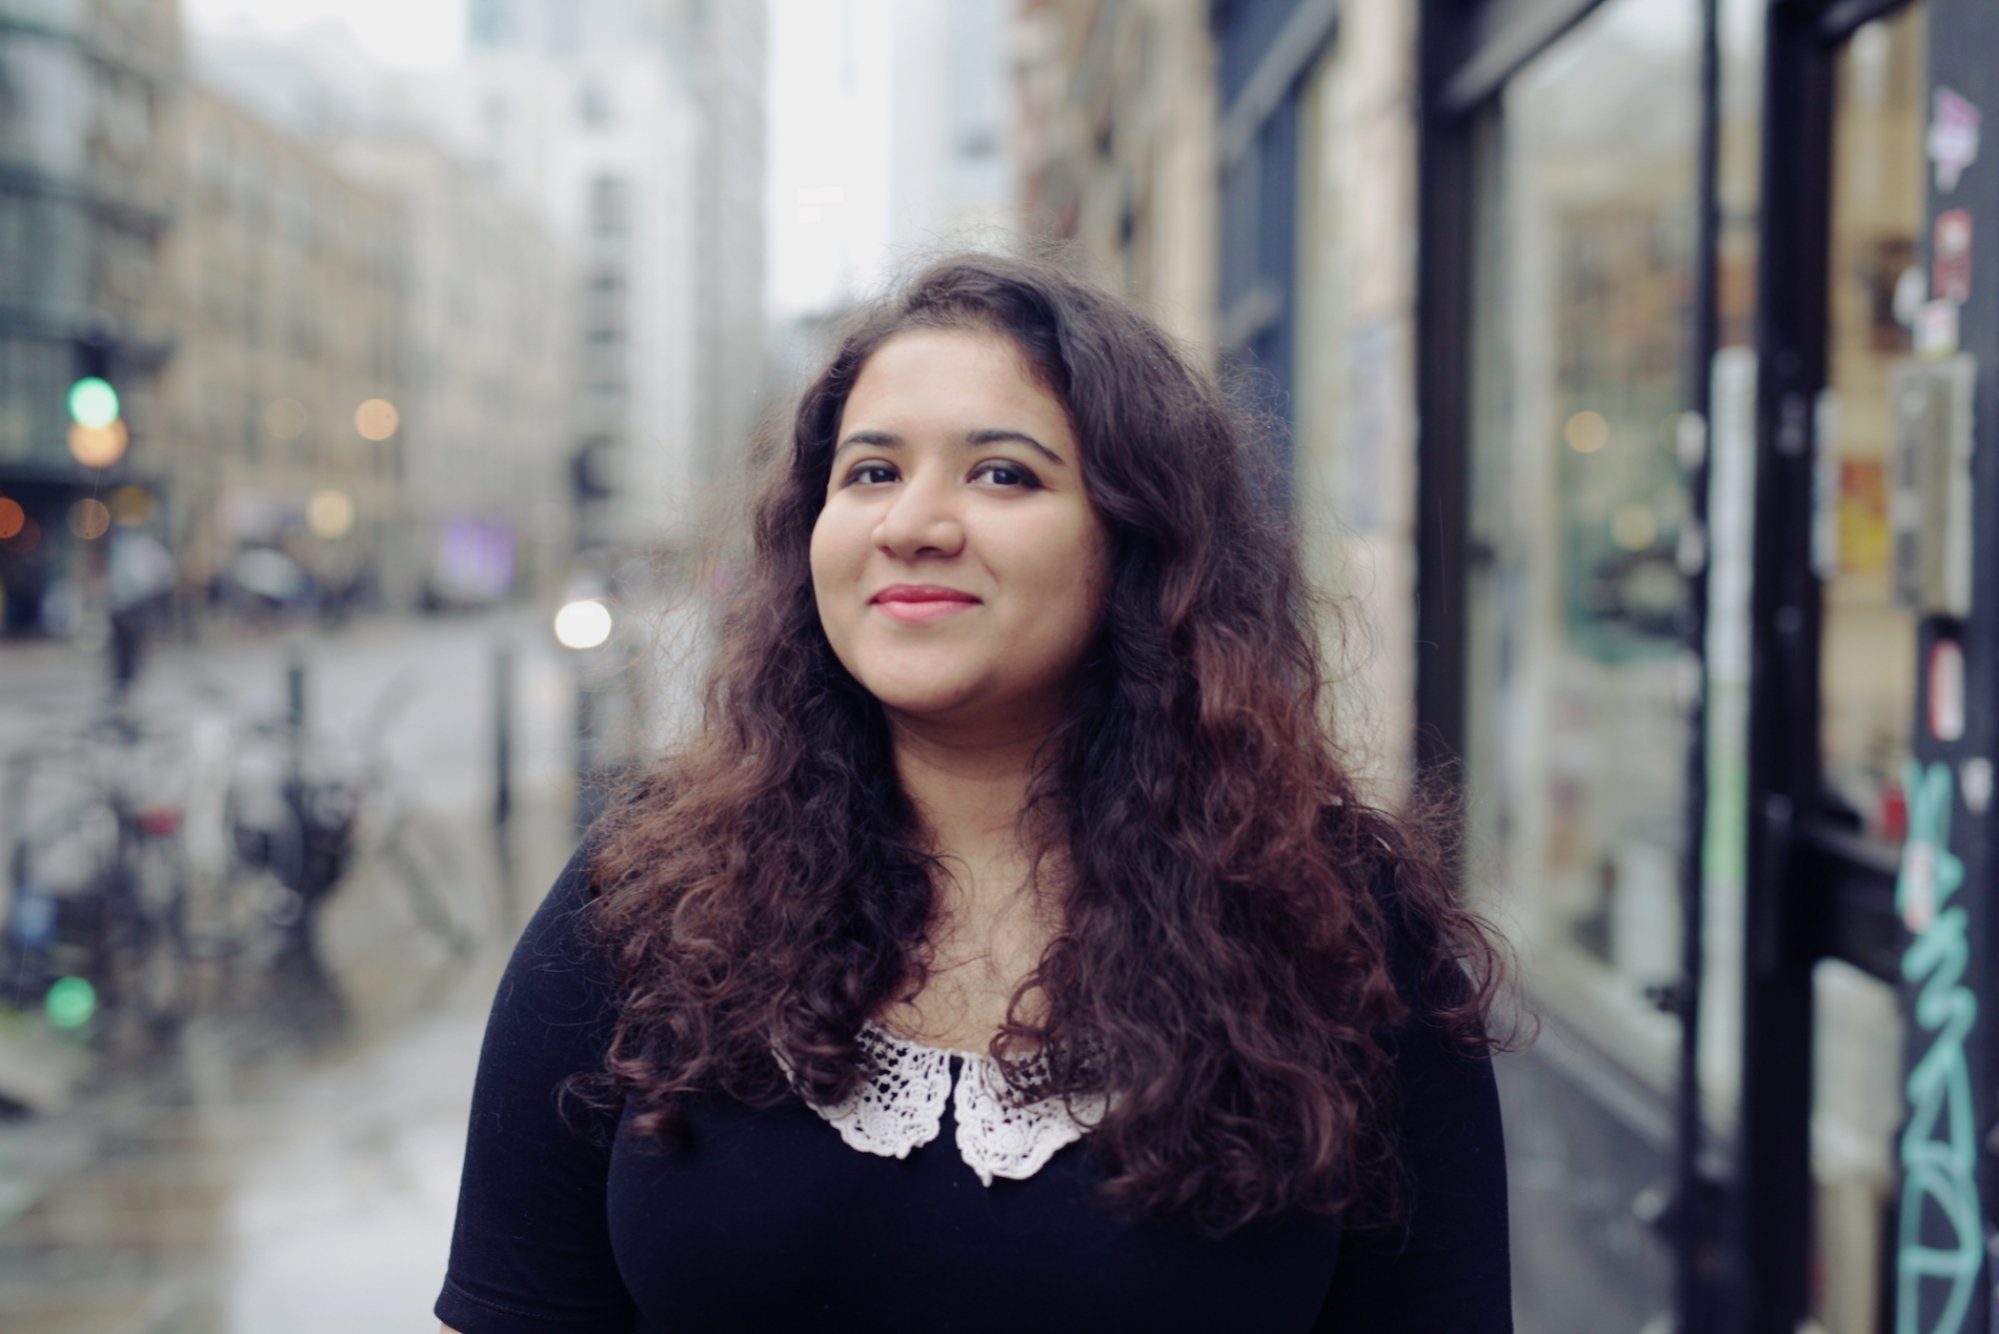 Hera Hussain, fondatrice de Chayn, se tient dans une rue du Royaume-Uni. 